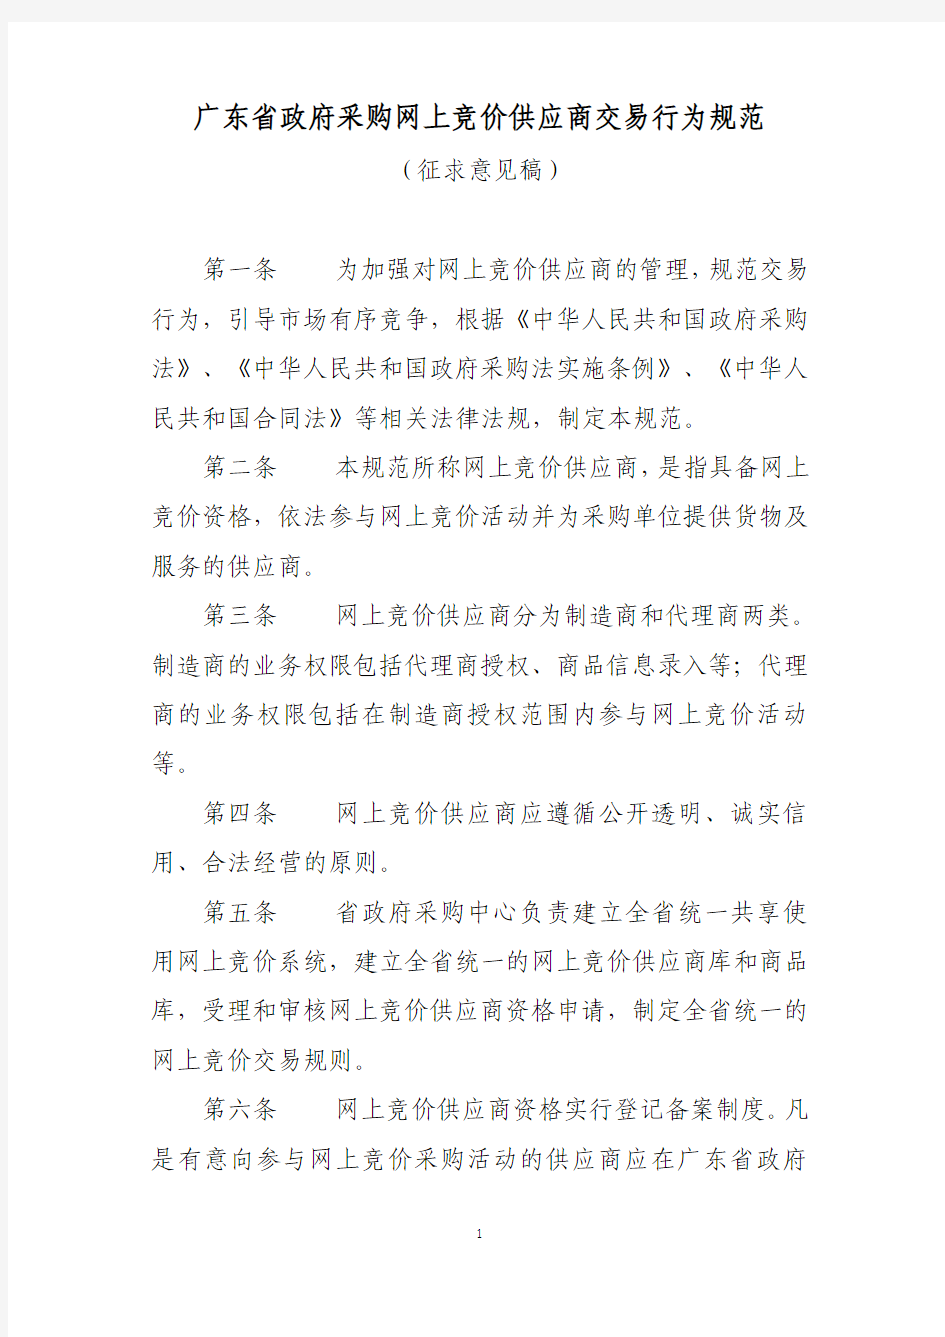 广东省政府采购网上竞价供应商交易行为规范 征求意见稿 